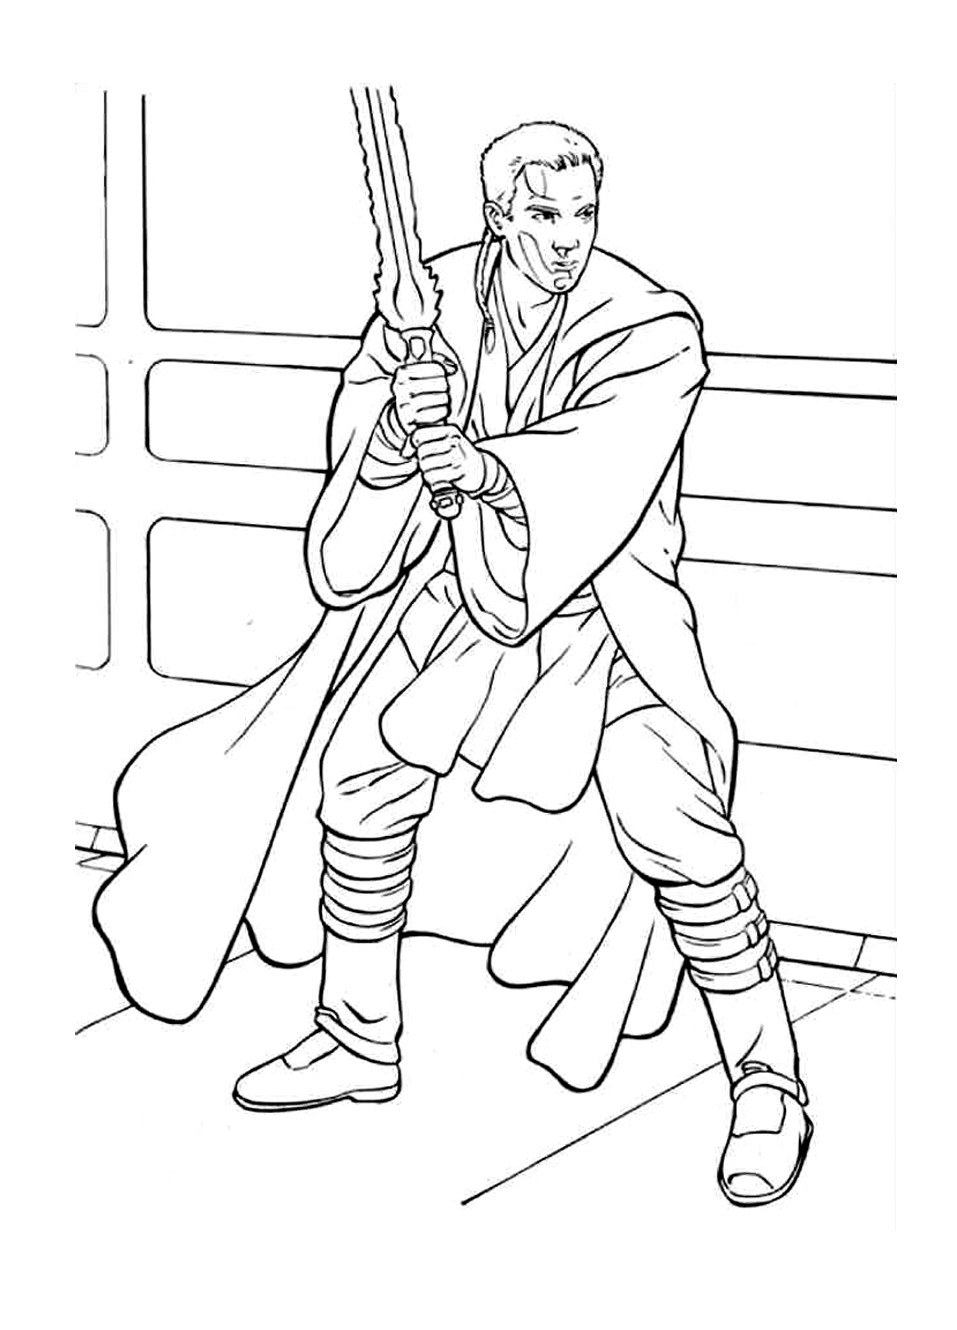 Obi Wan Kenobi Coloring Page at GetColorings.com | Free printable ...